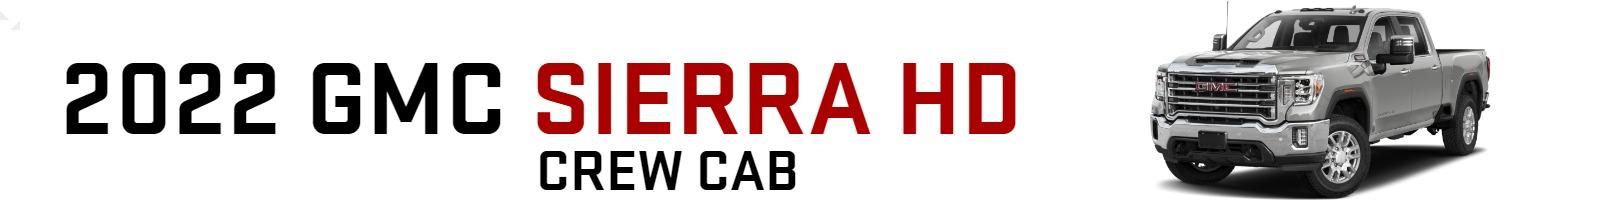 2022 GMC Sierra HD Crew Cab